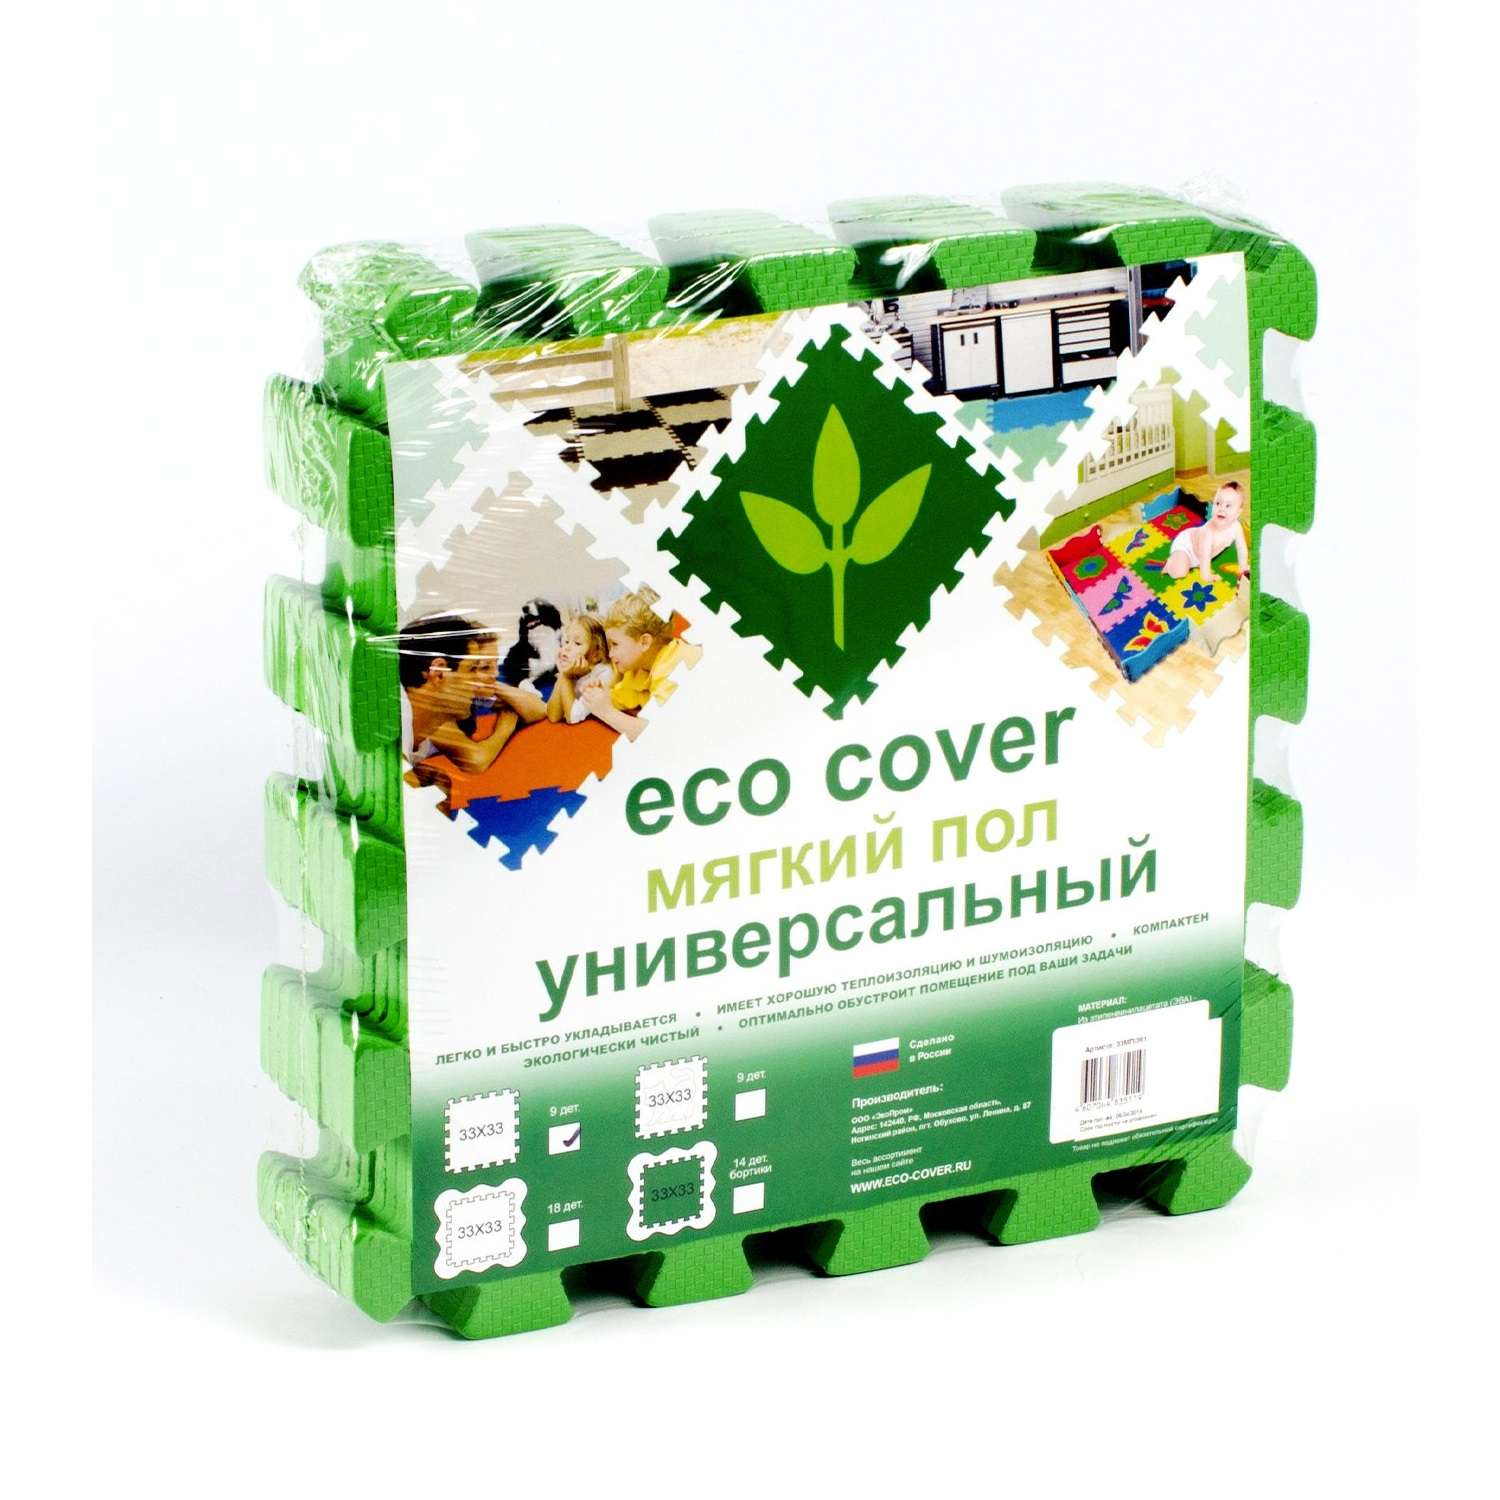 Развивающий детский коврик Eco cover игровой мягкий пол для ползания зеленый 33х33 - фото 1